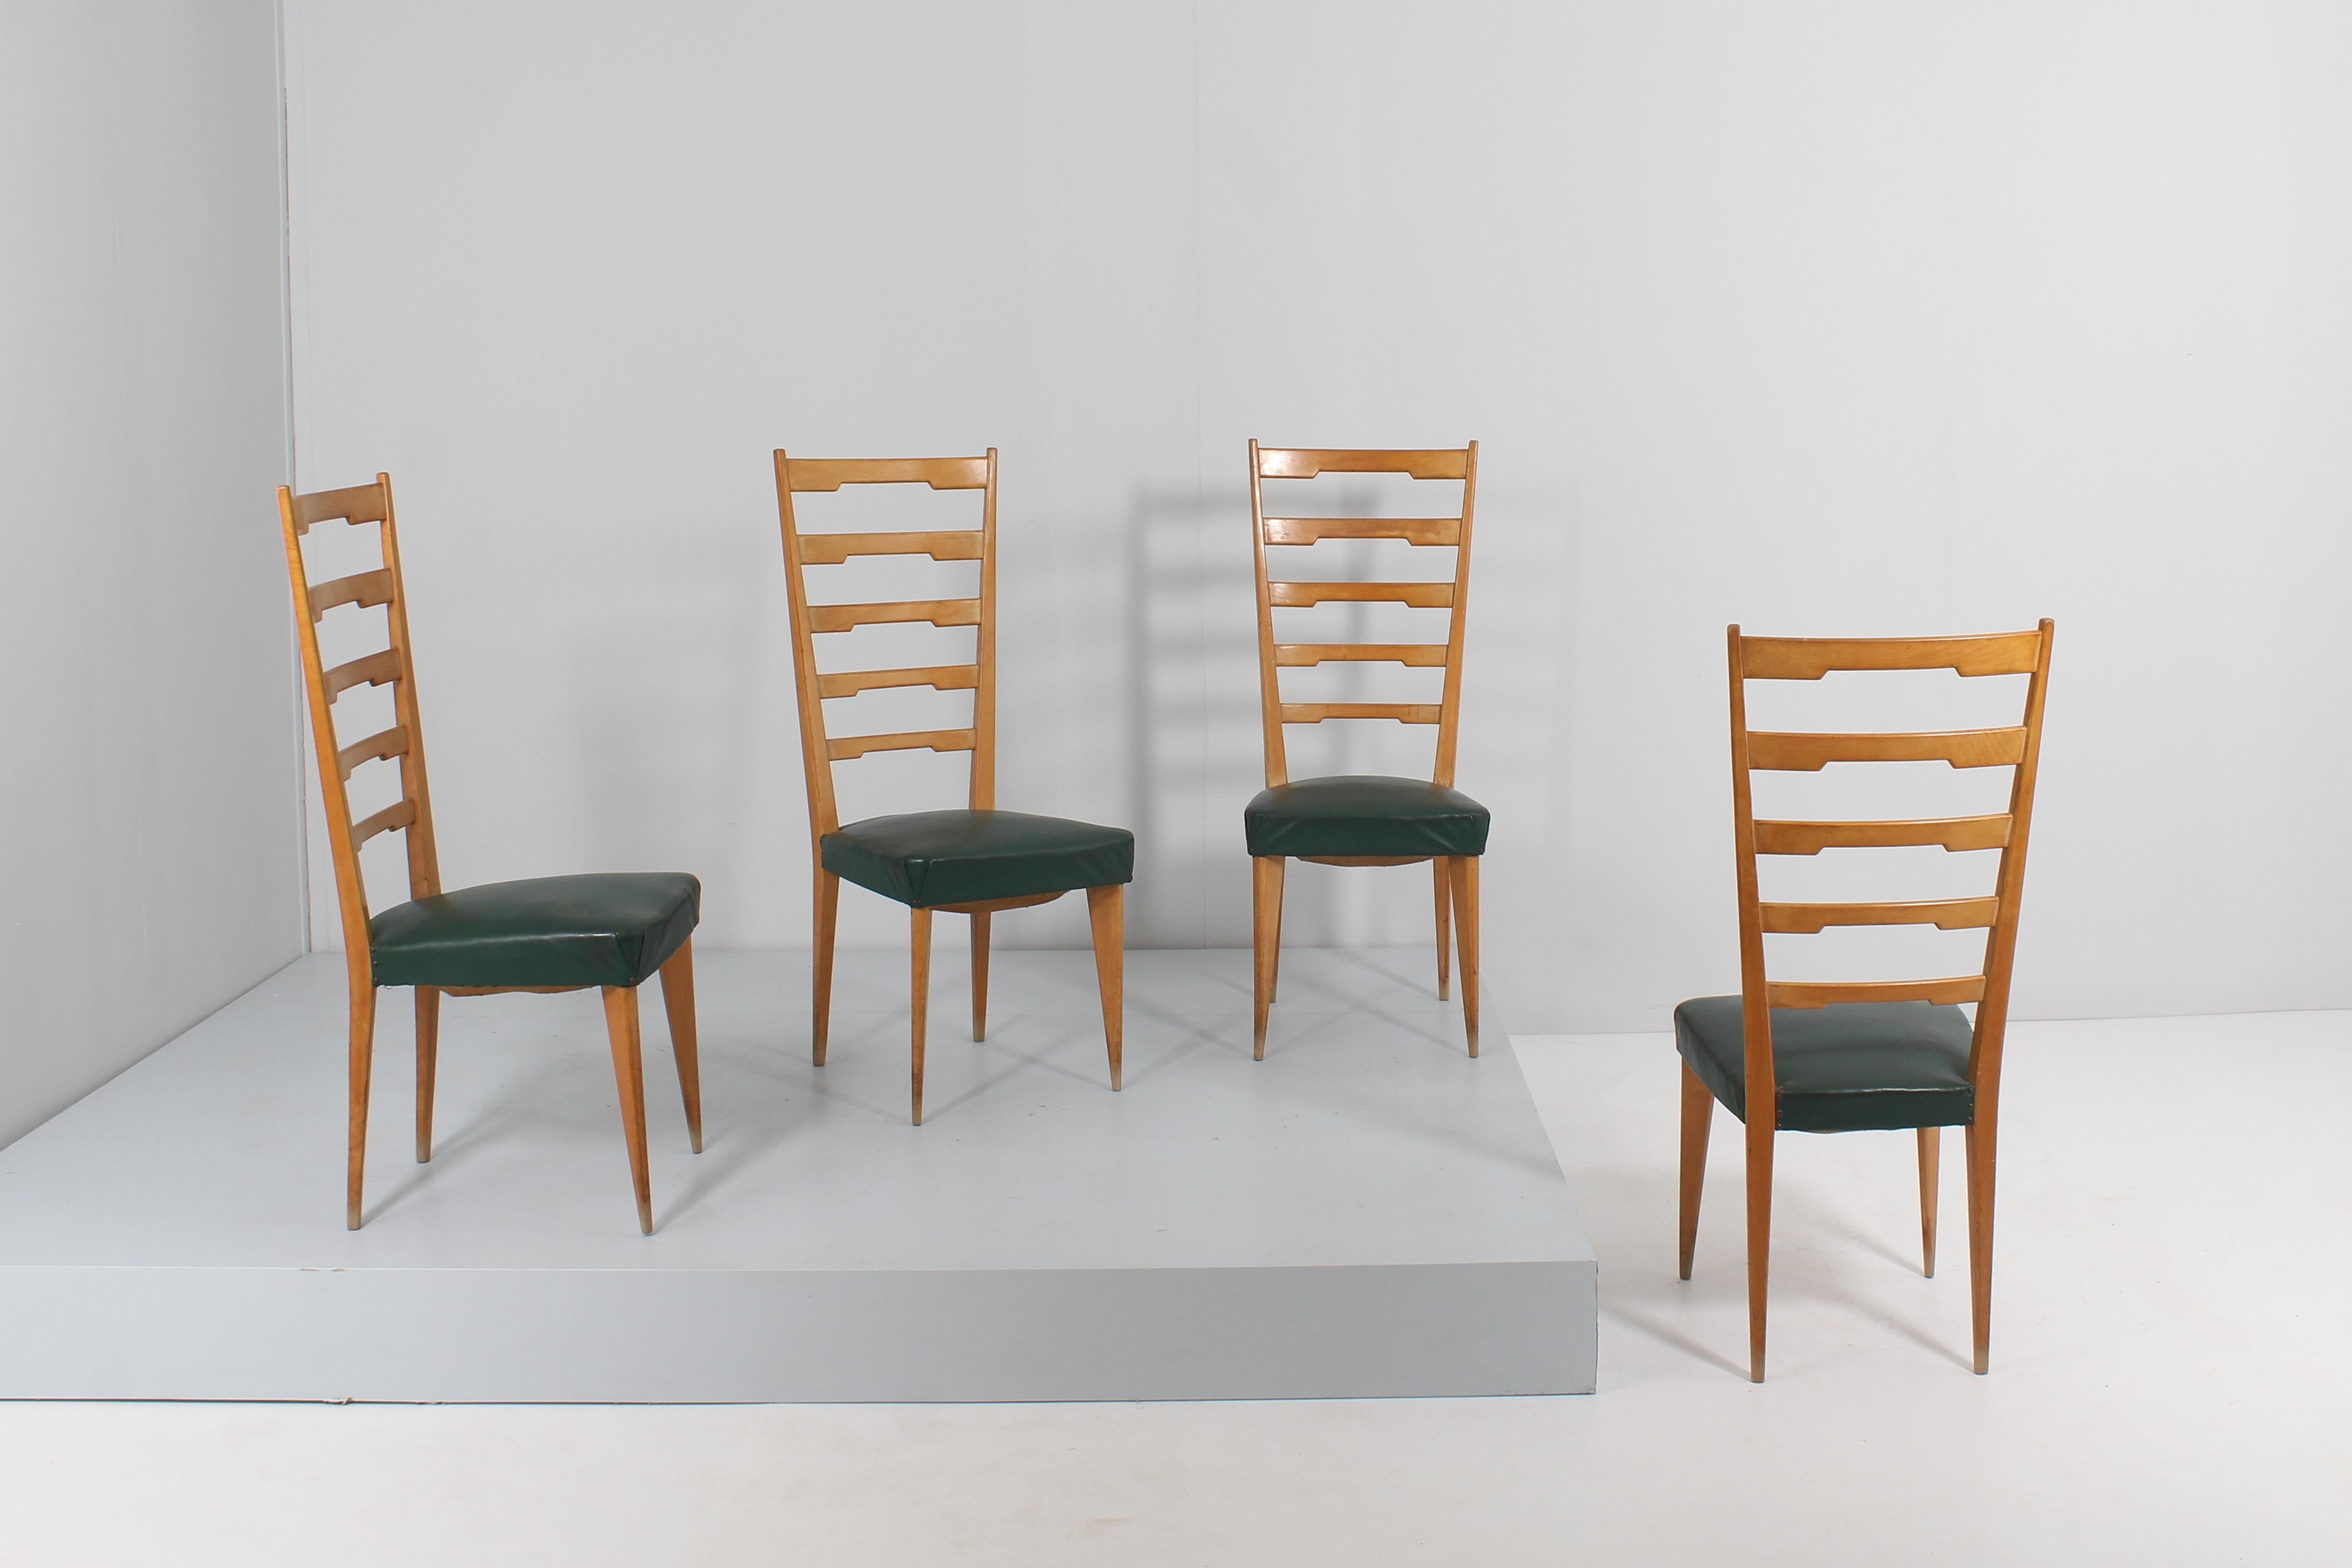 Magnifique et élégant ensemble de 4 chaises, en bois clair, à haut dossier avec des éléments horizontaux façonnés et des pieds à pointes. L'assise est doublée de skaï synthétique vert foncé. Production italienne des années 60 dans le style de Paolo